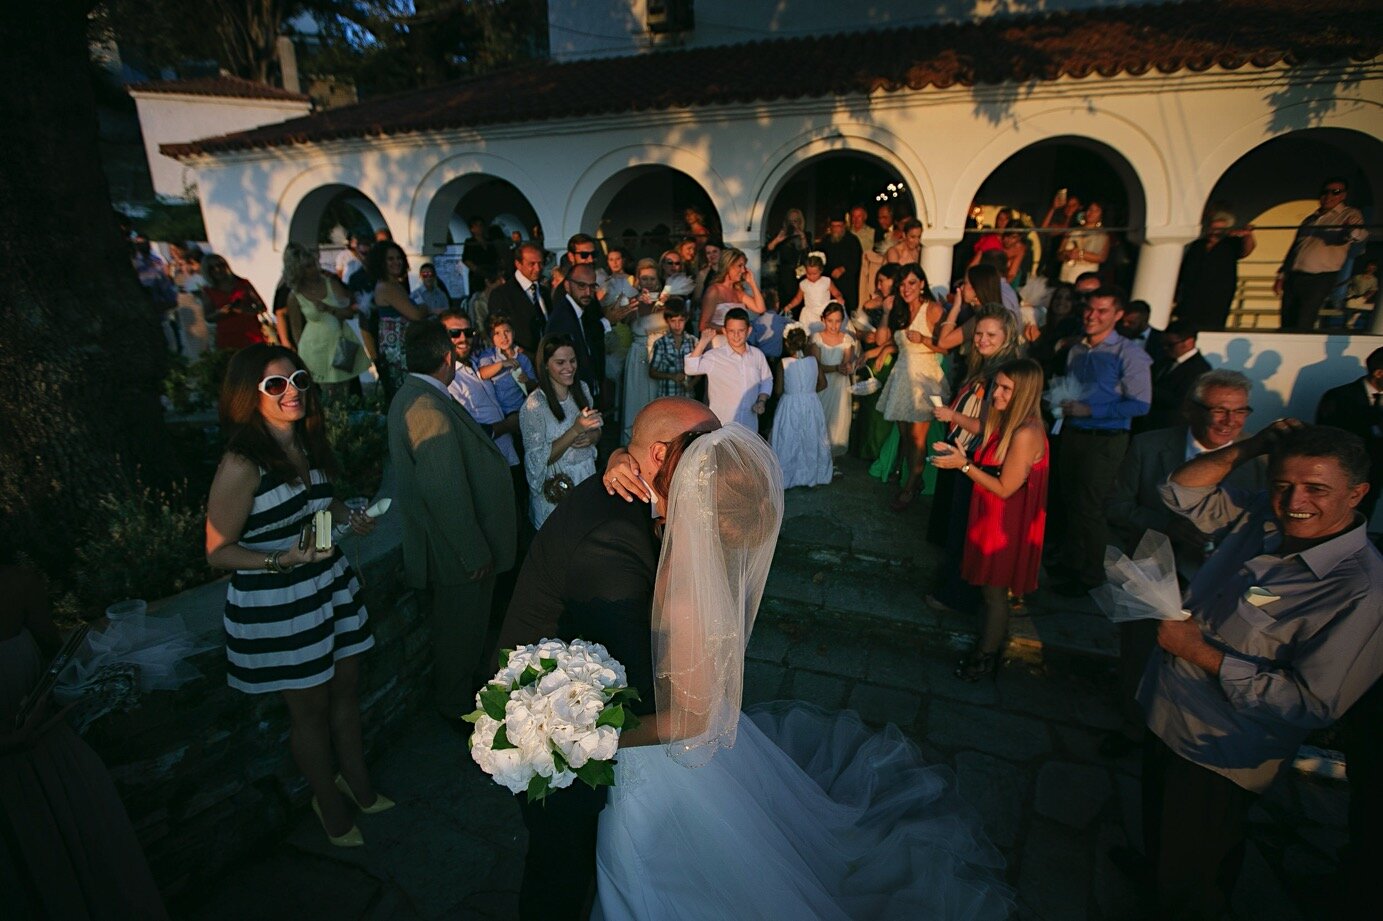 Wedding_Portaria_Efthimiopoulos_Photography0047.jpg